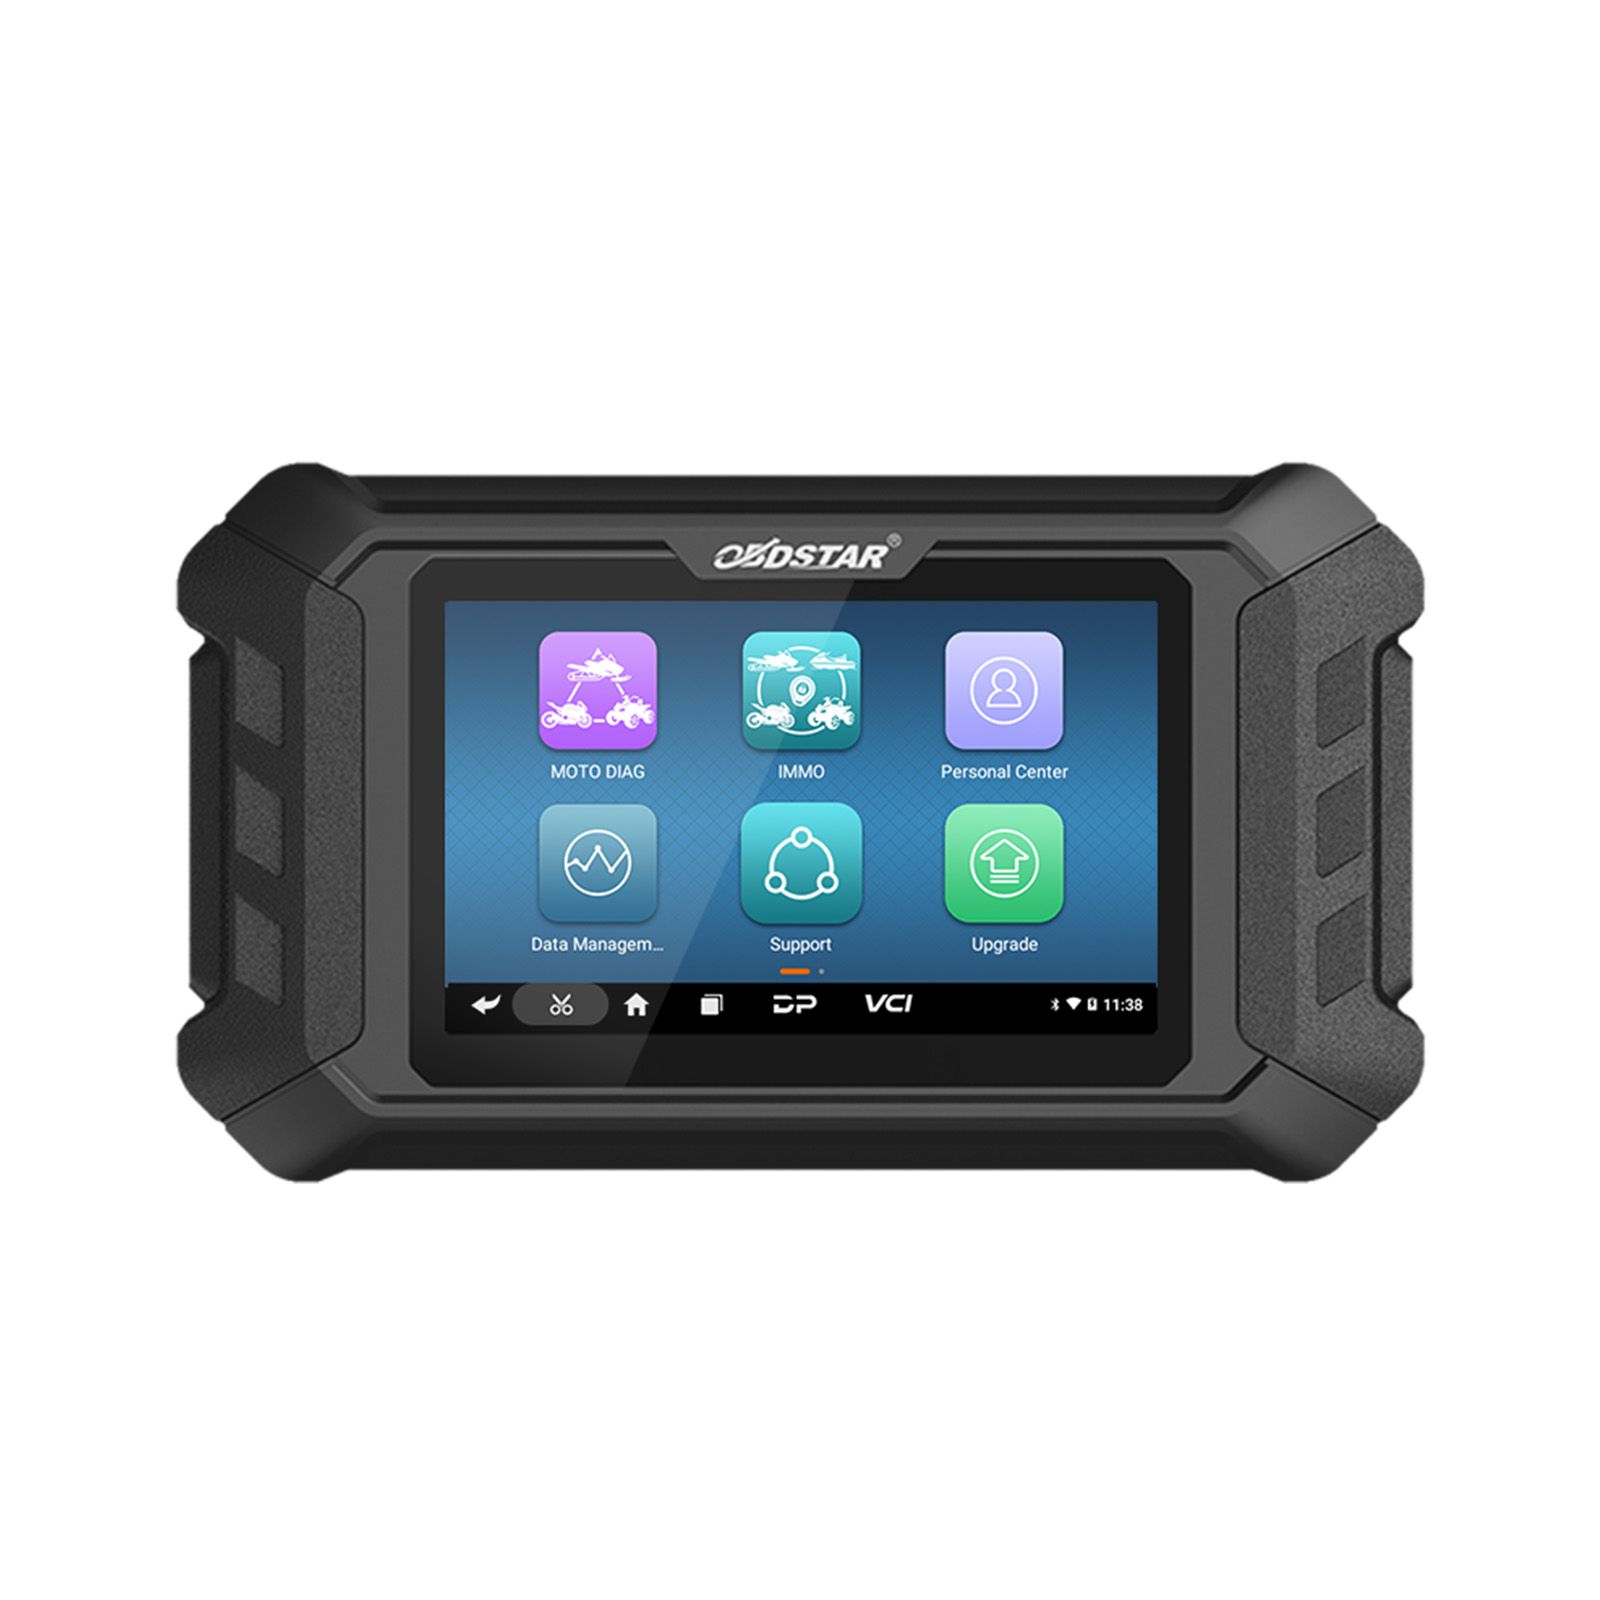 Obdstar iscan ktm / husqvarna herramienta inteligente de diagnóstico de motocicletas tabletas portátiles